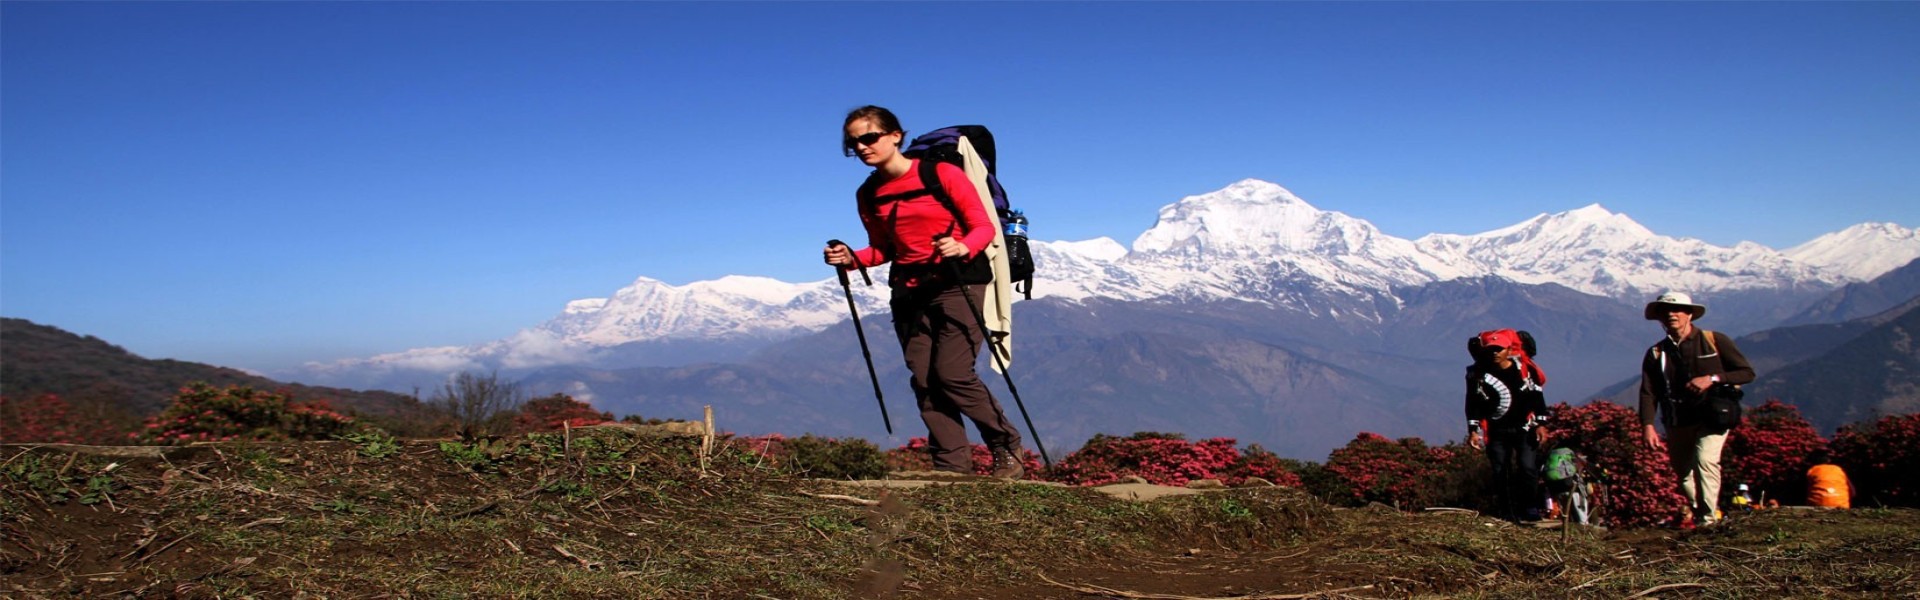 Precautions while trekking in Nepal